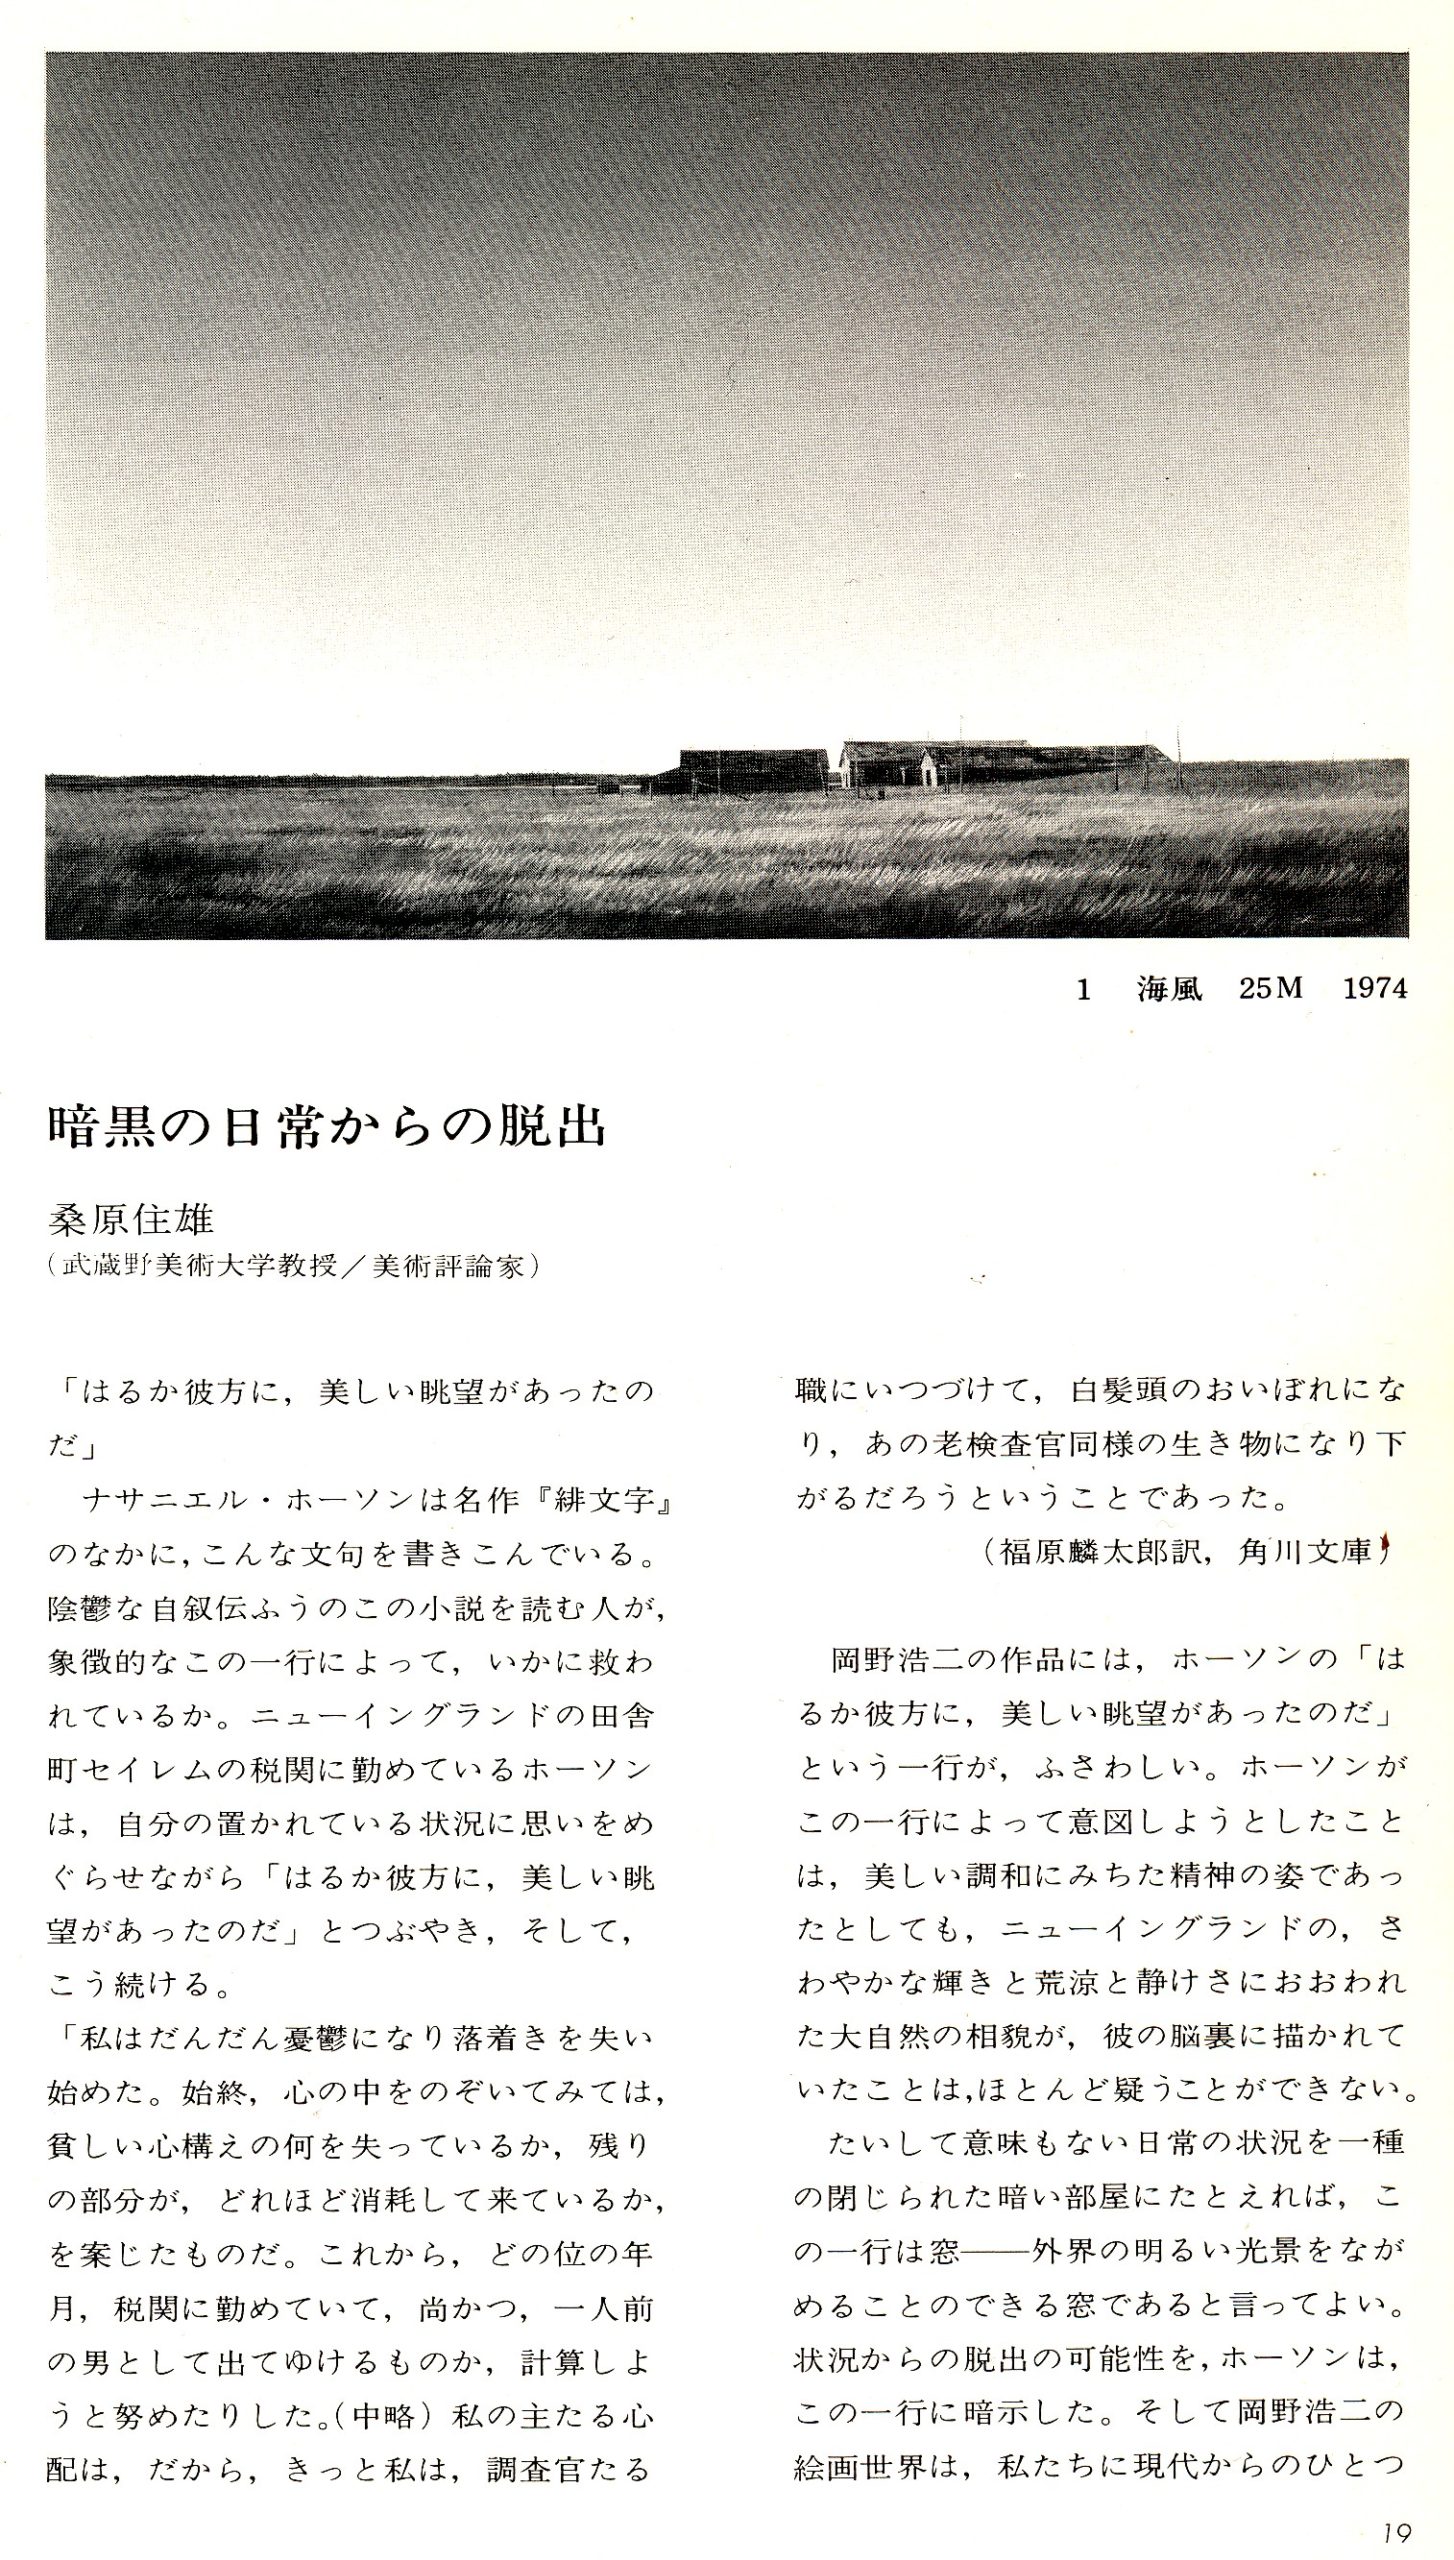 岡野浩二 WORKS DOCUMENT (1) 1974~1984 | 岡野岬石の資料蔵